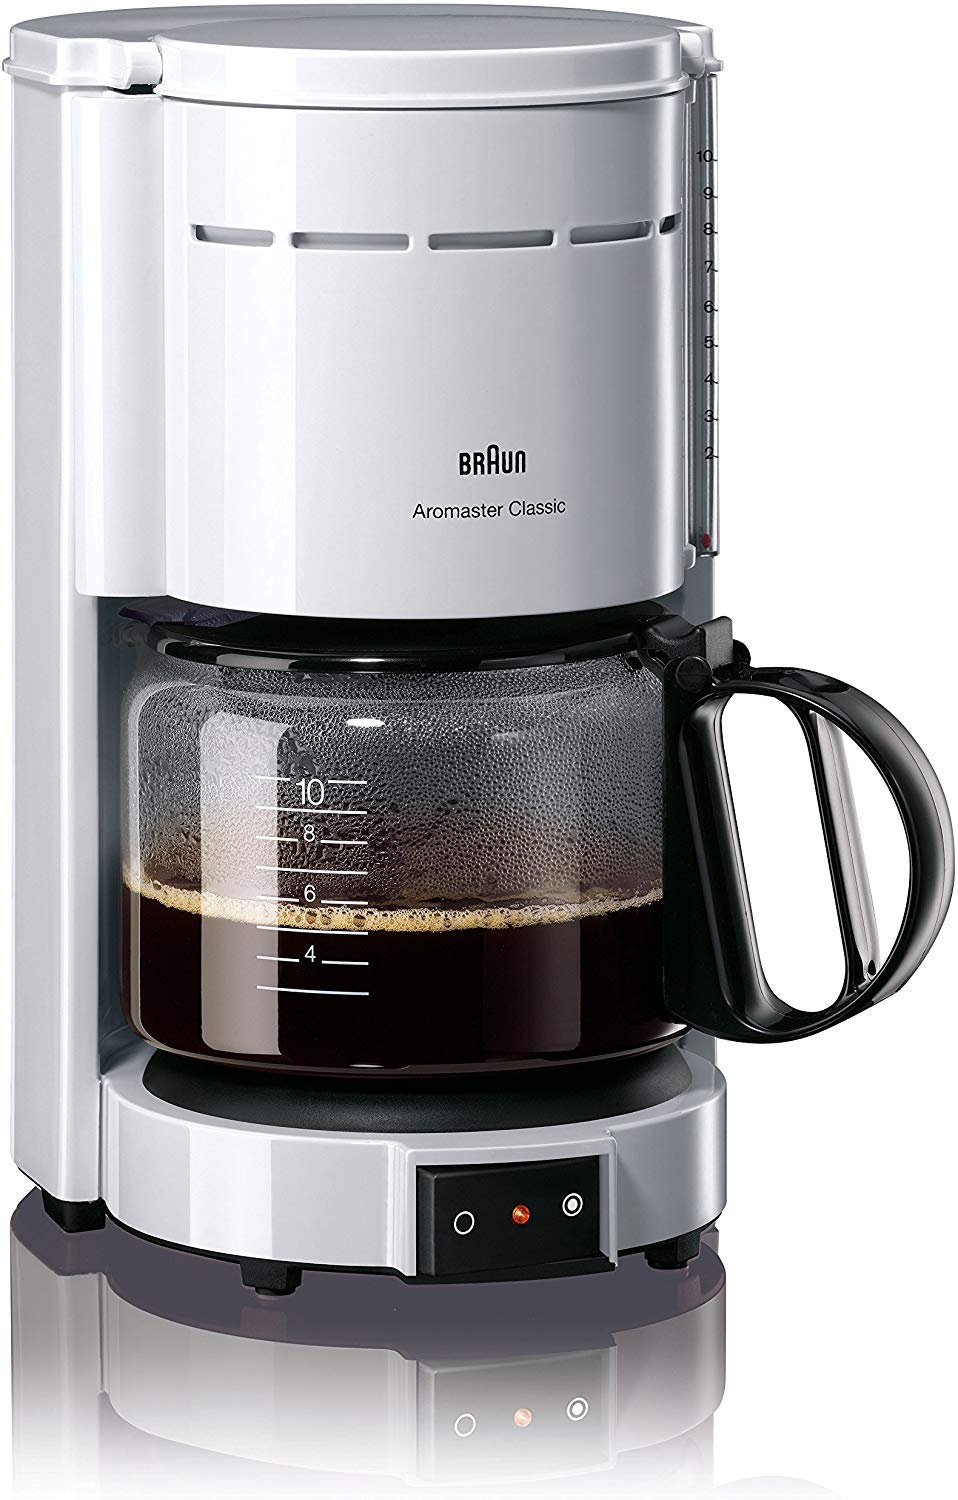 Braun Household Kaffeemaschine KF 47 WH - Filterkaffeemaschine mit Glaskanne für klassischen Filterkaffee, Aromatischer Kaffee dank OptiBrew-System, Tropfstopp, Abschaltautomatik, Weiß